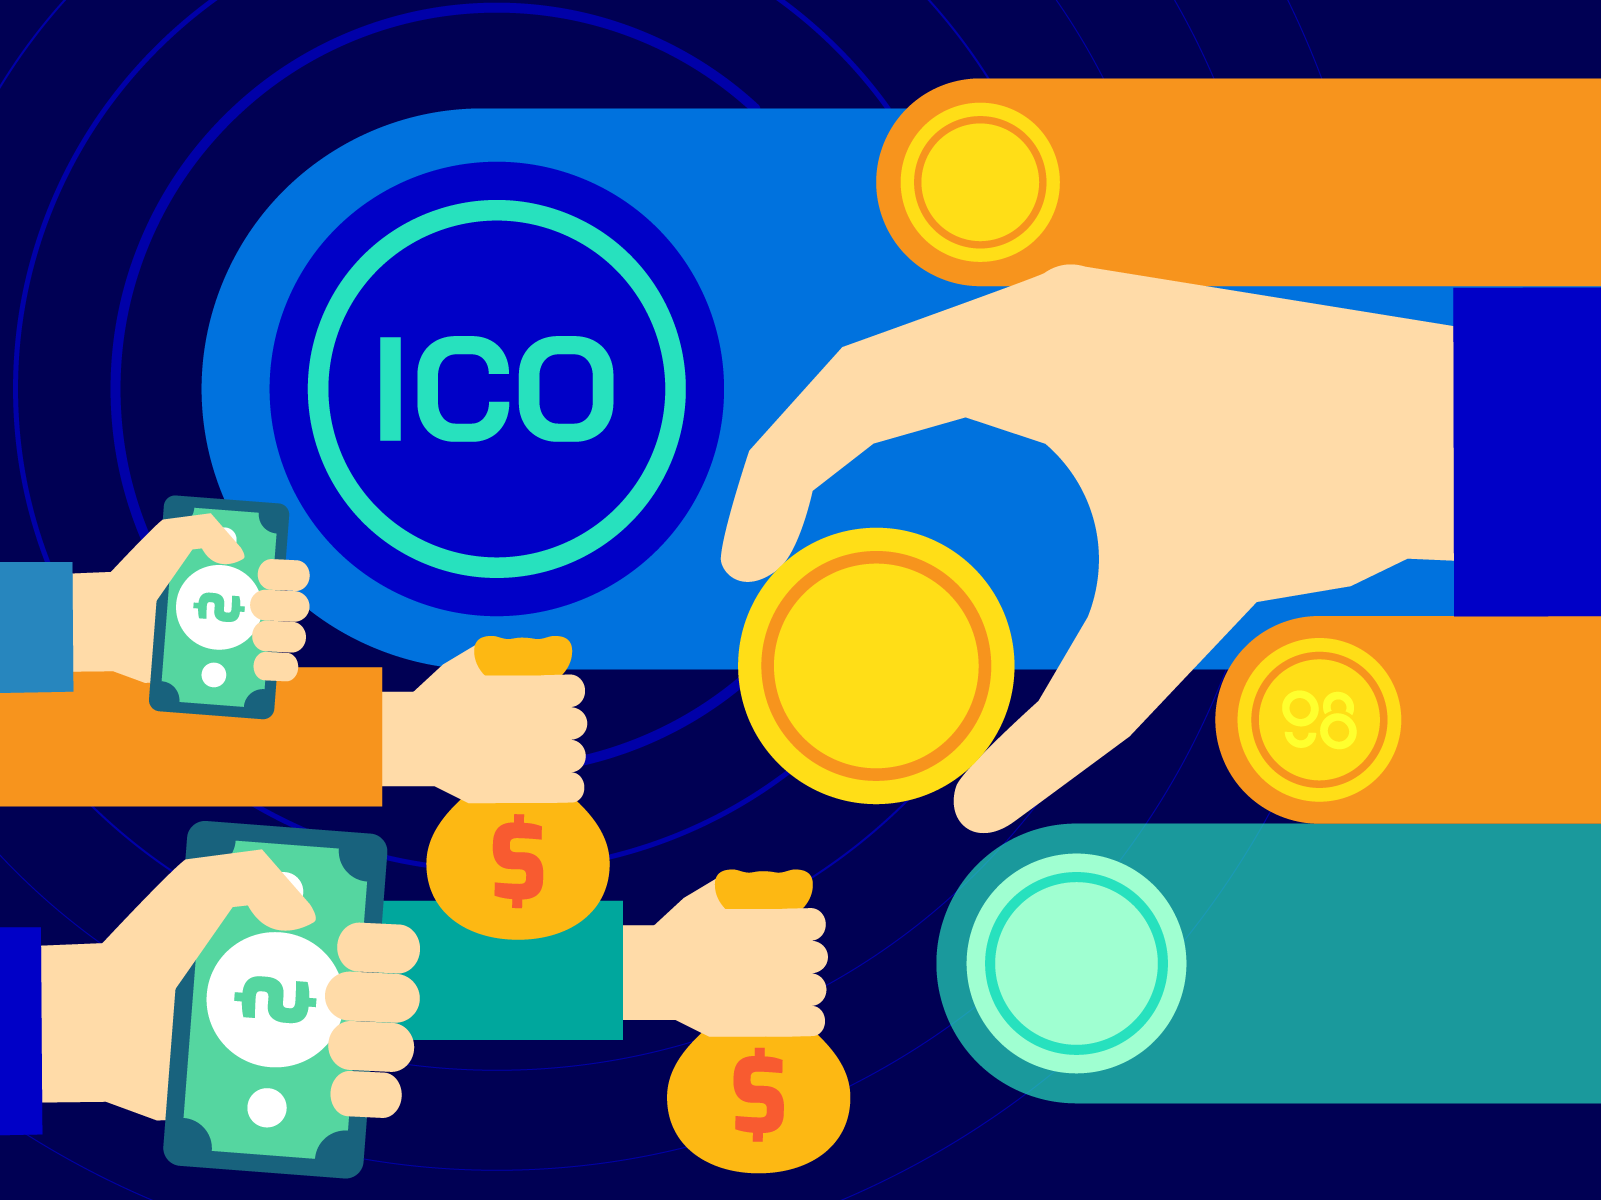 Tìm hiểu ngay ico là gì coin98 để đầu tư thông minh và lợi nhuận cao